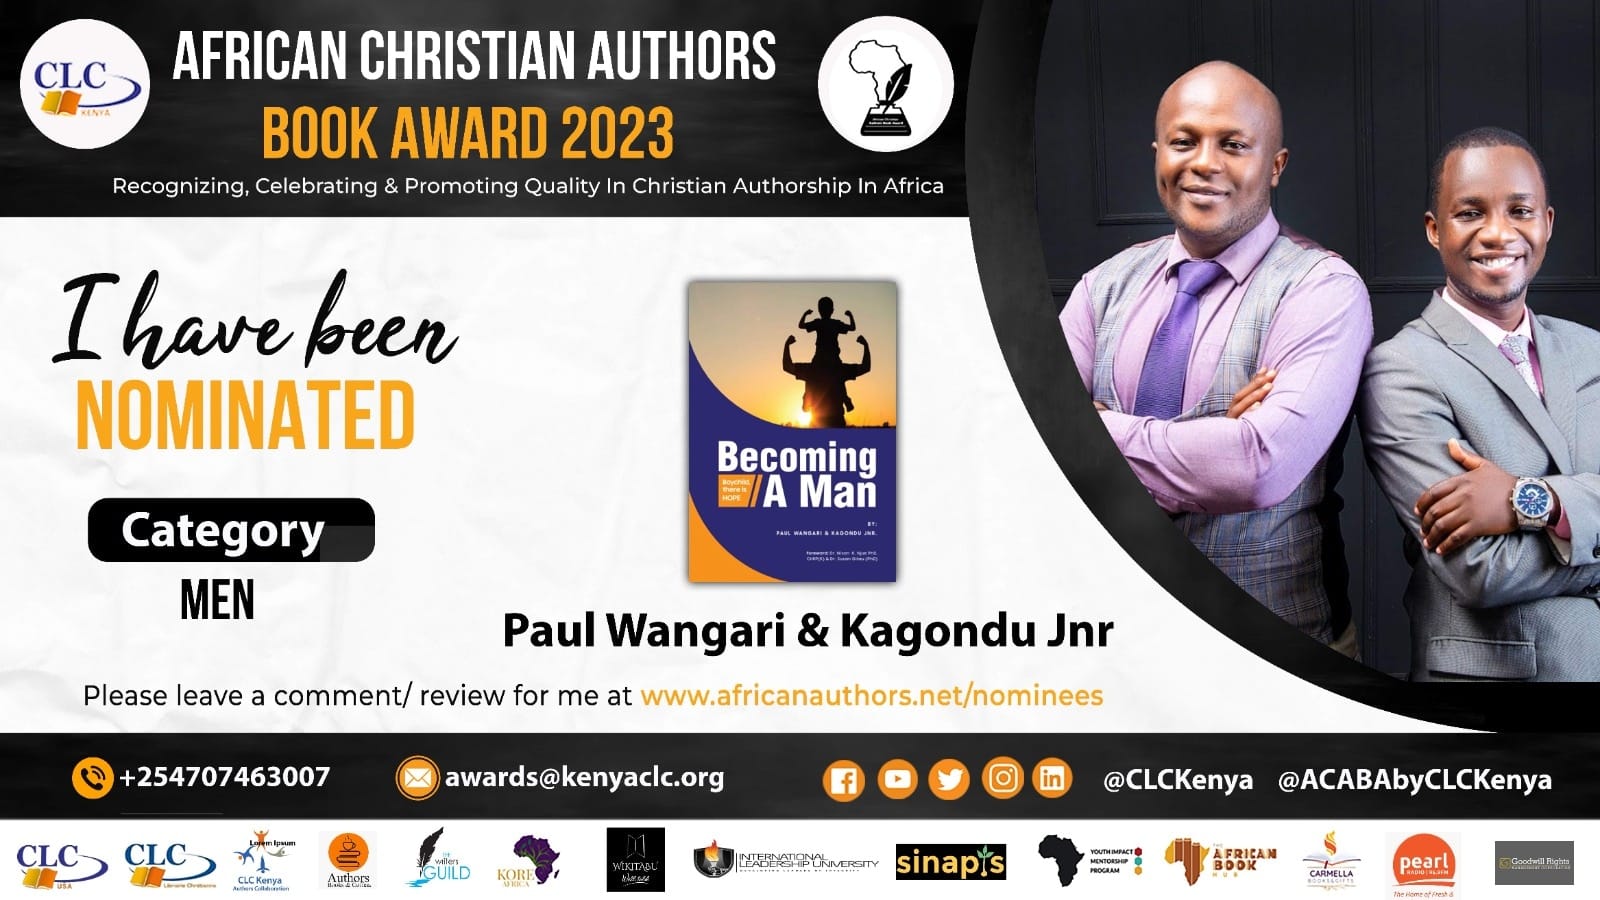 Paul Wangari & Kagondu Jnr.